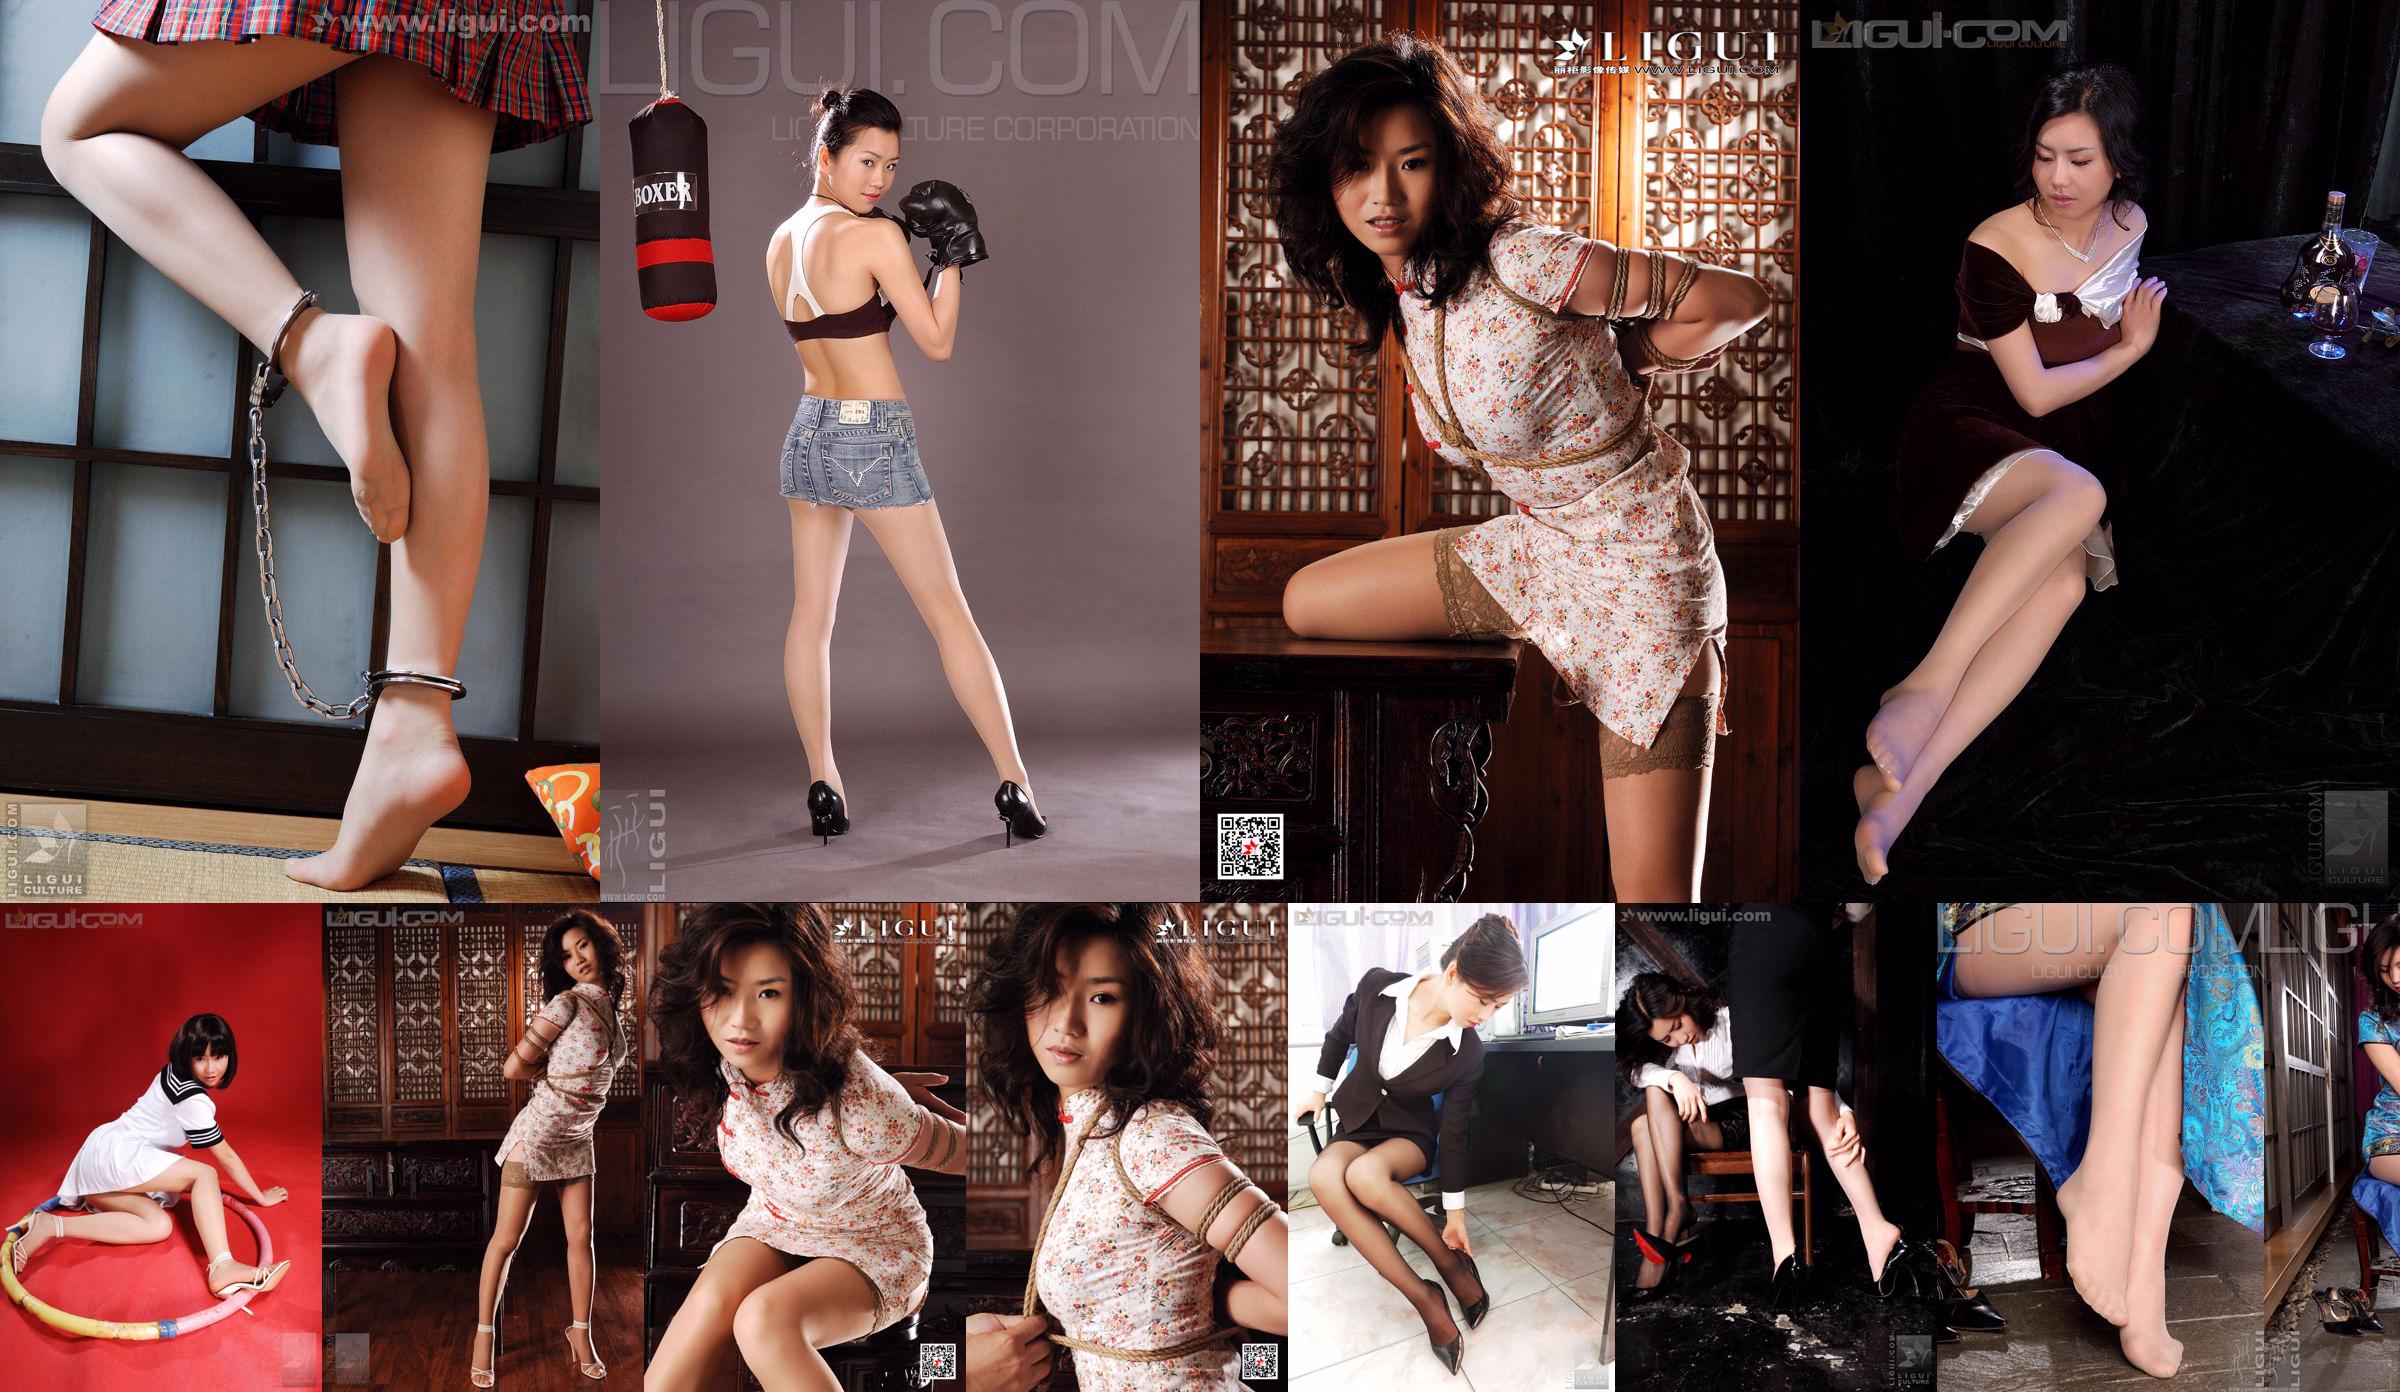 Modelo Yumi "Linda garota da escola mostra meias ao malhar" [Ligui LiGui] Foto de pé de seda com foto No.bbb3b7 Página 2